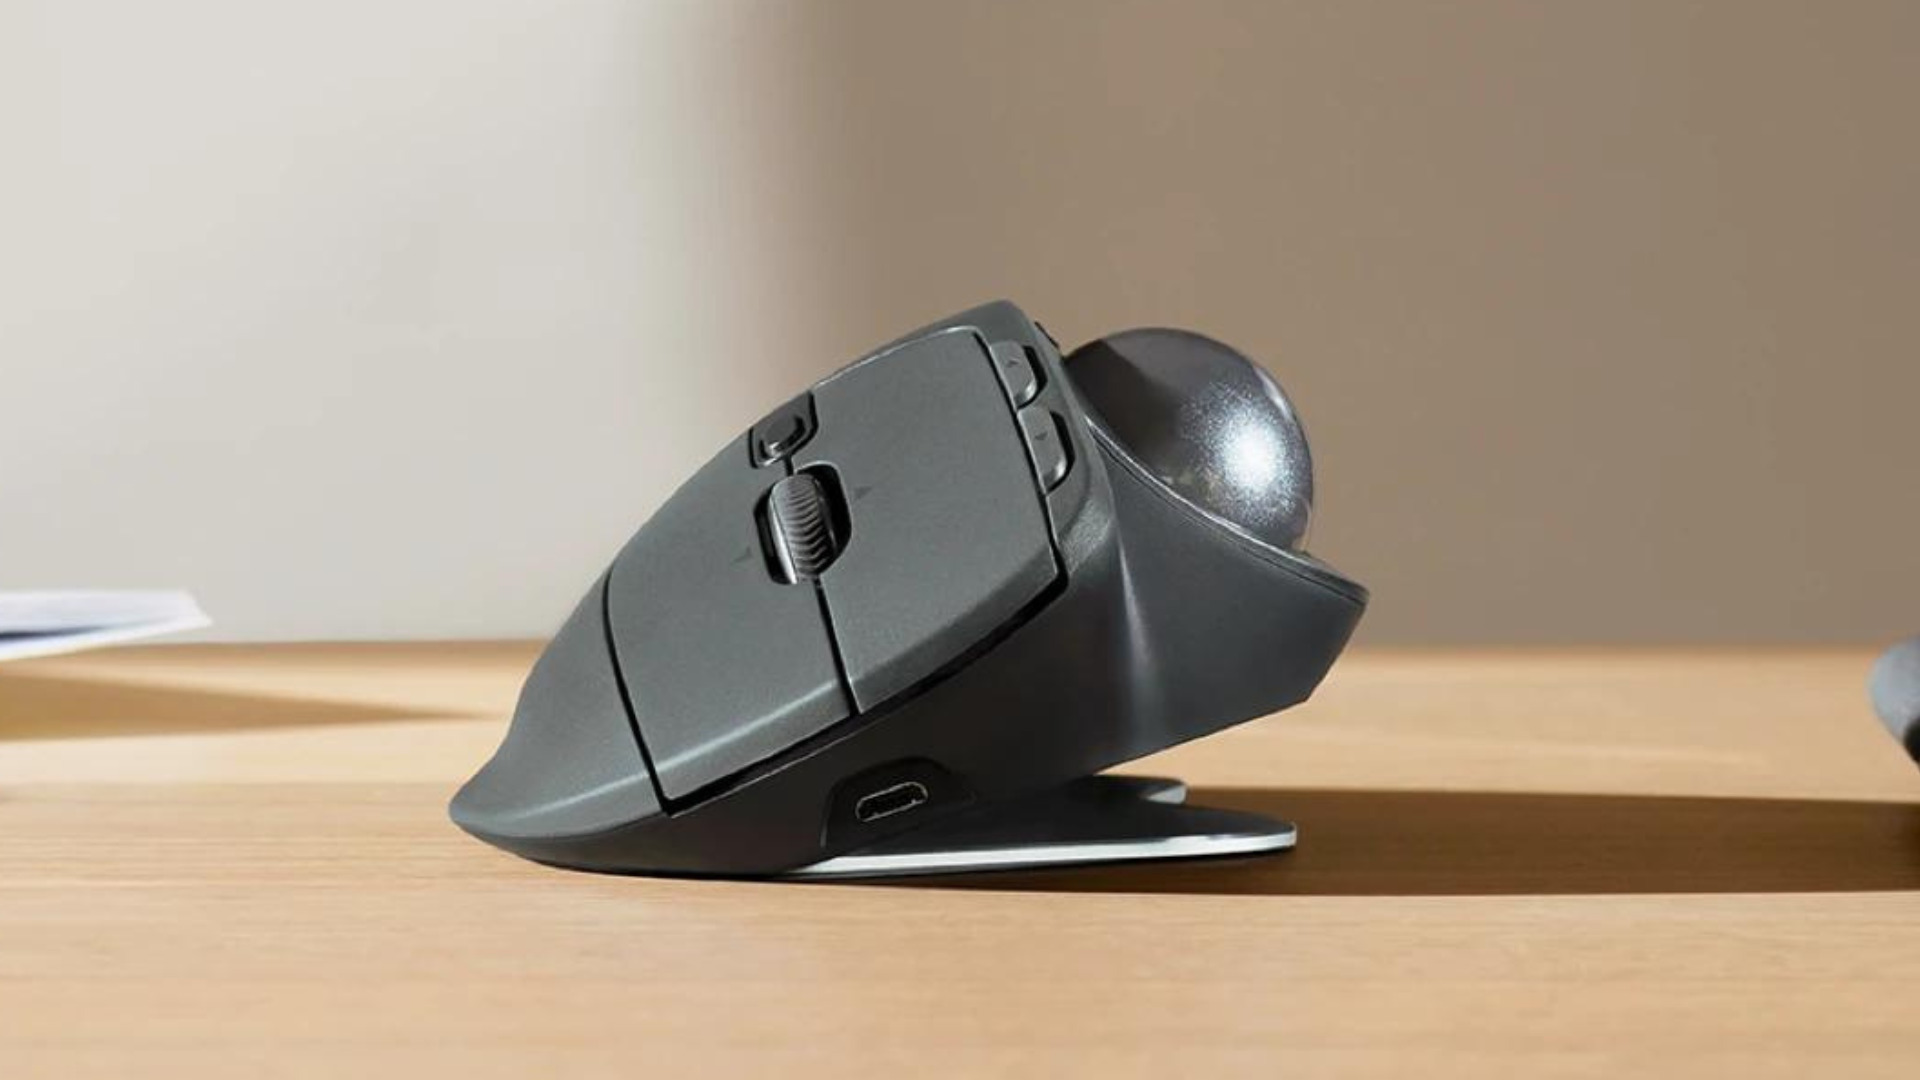 Performante et sans fil, la G502 Lightspeed de Logitech est une souris  parfaite pour le gaming - Numerama